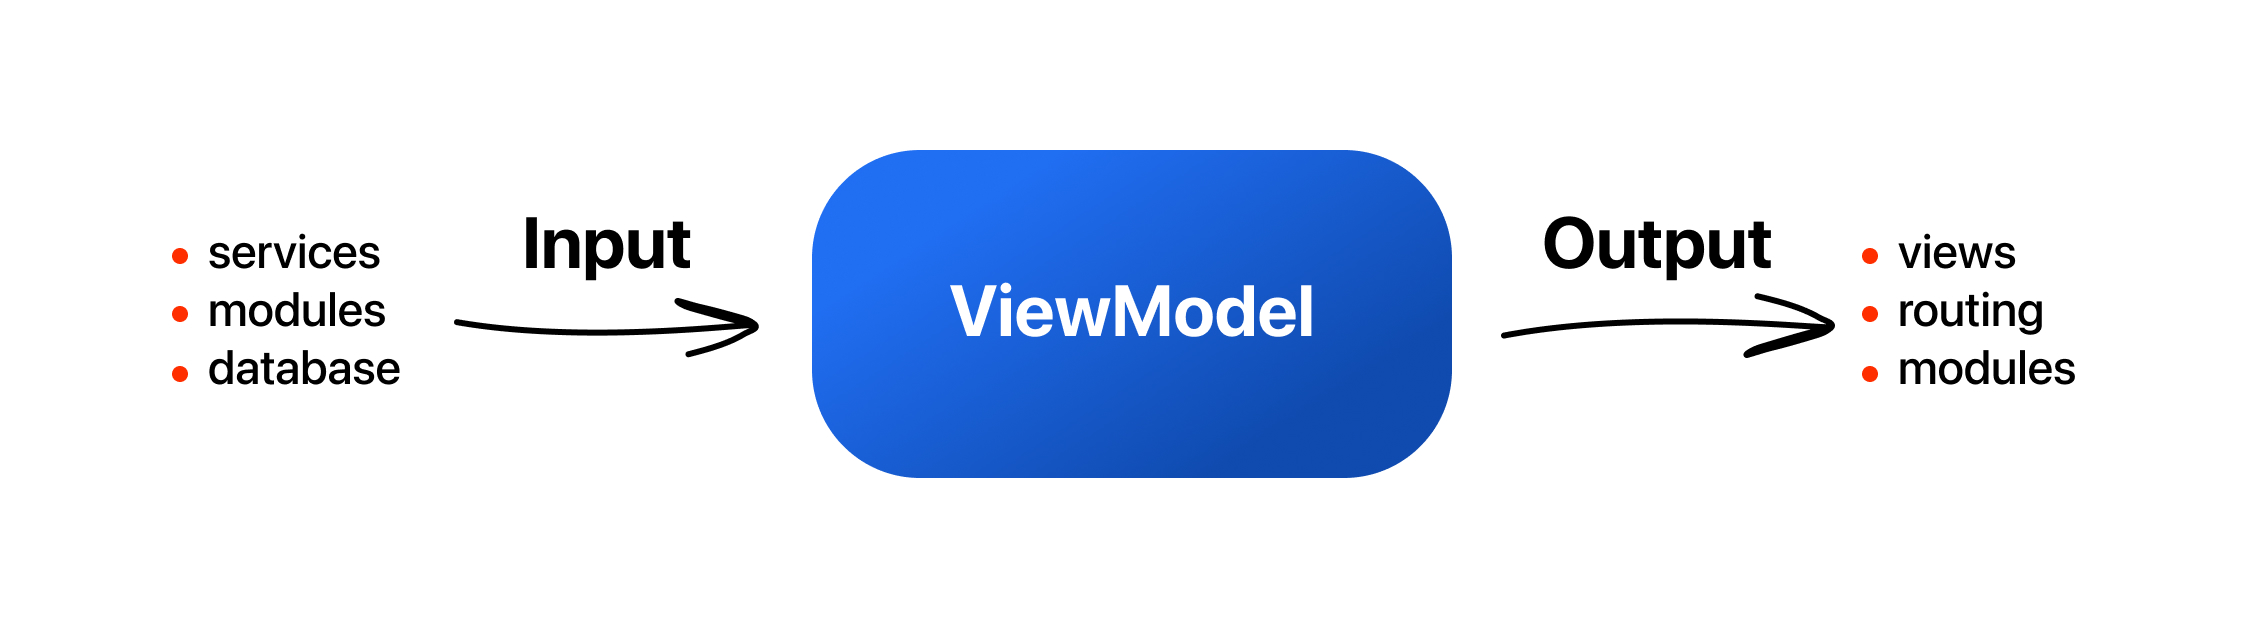 Упрощенная схема взаимодействия с ViewModel